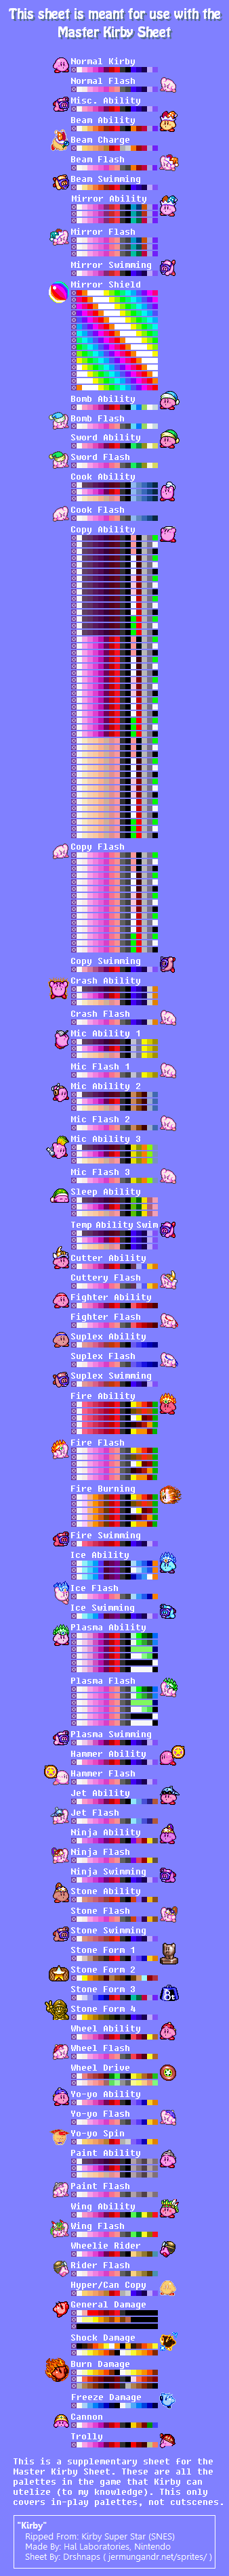 Kirby Super Star / Kirby's Fun Pak - Kirby Palettes